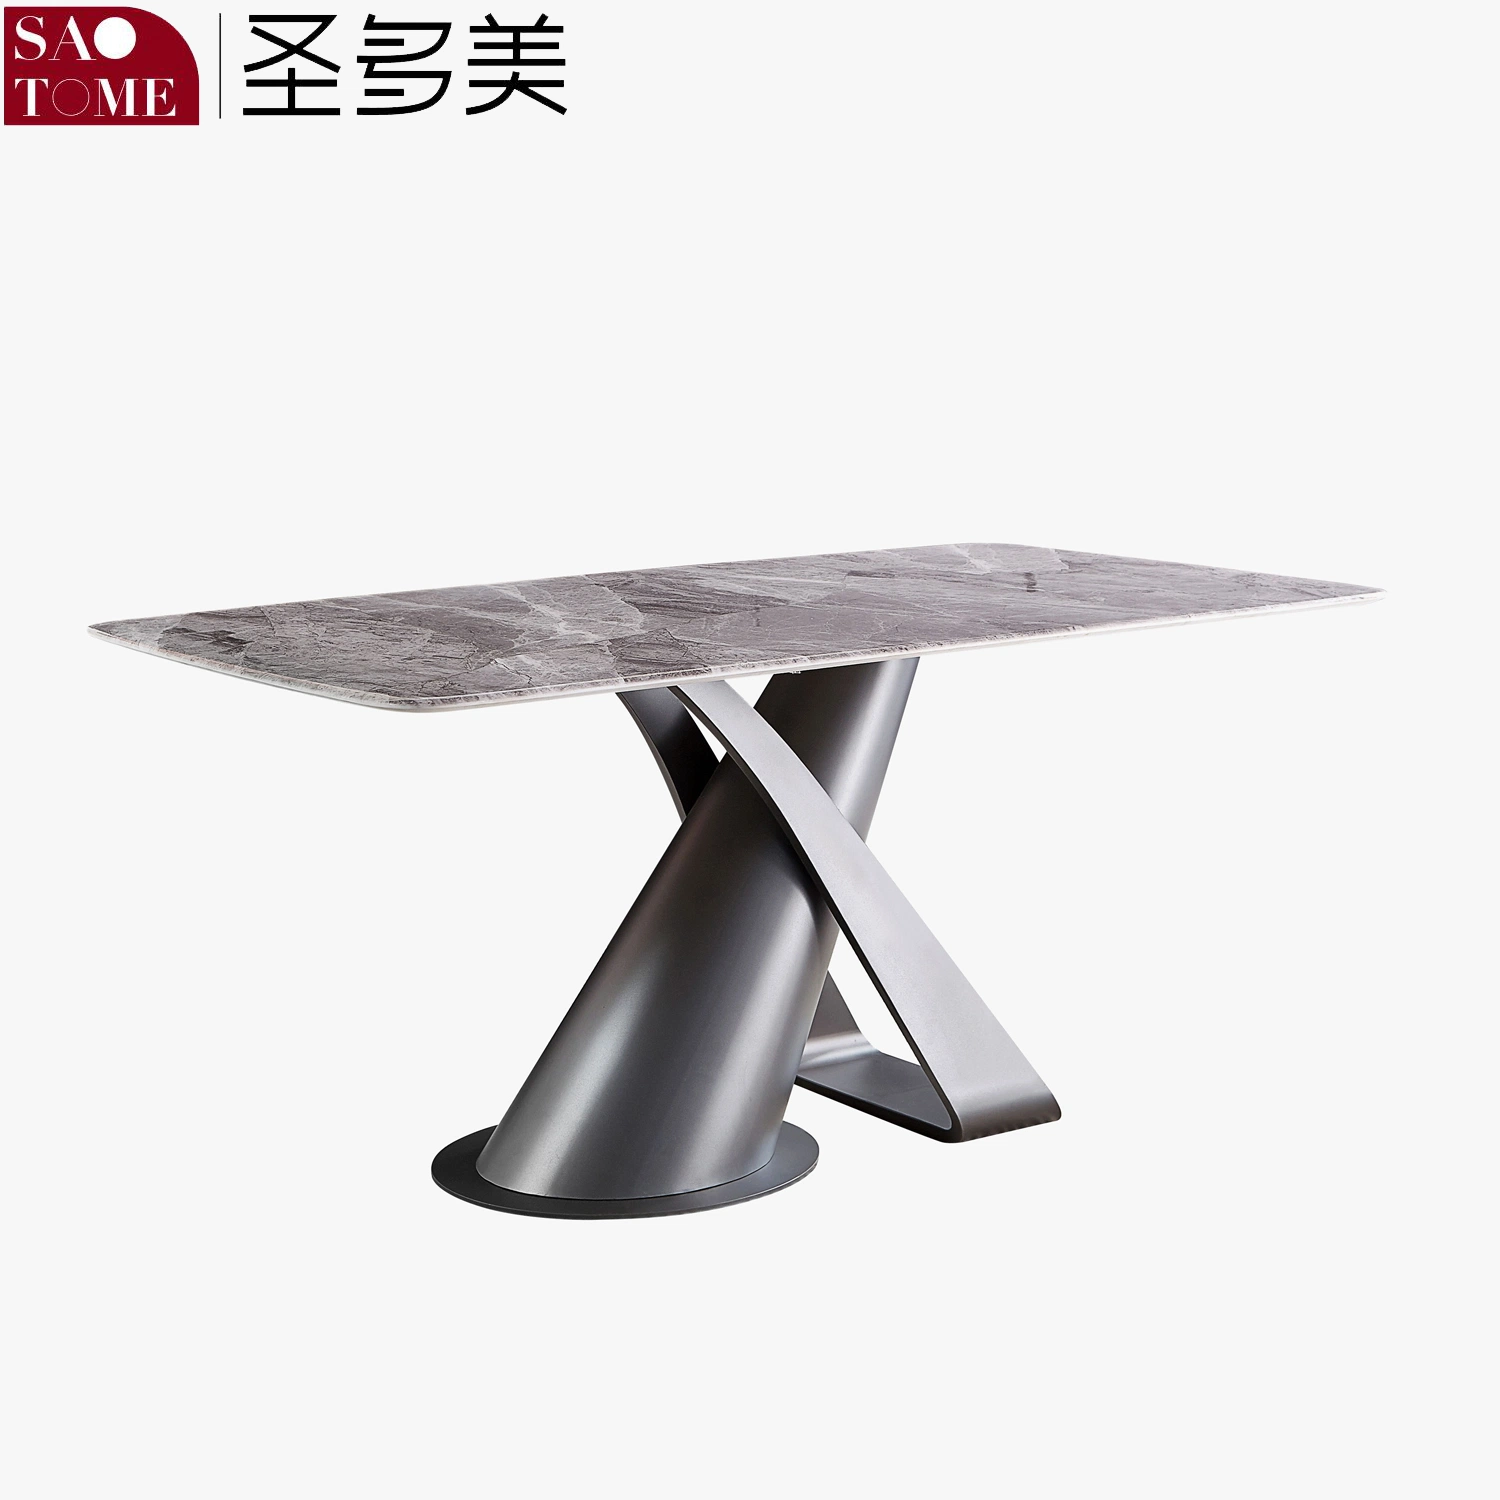 Mesa de jantar moderna com base em aço inoxidável e tampo de mármore/rocha.